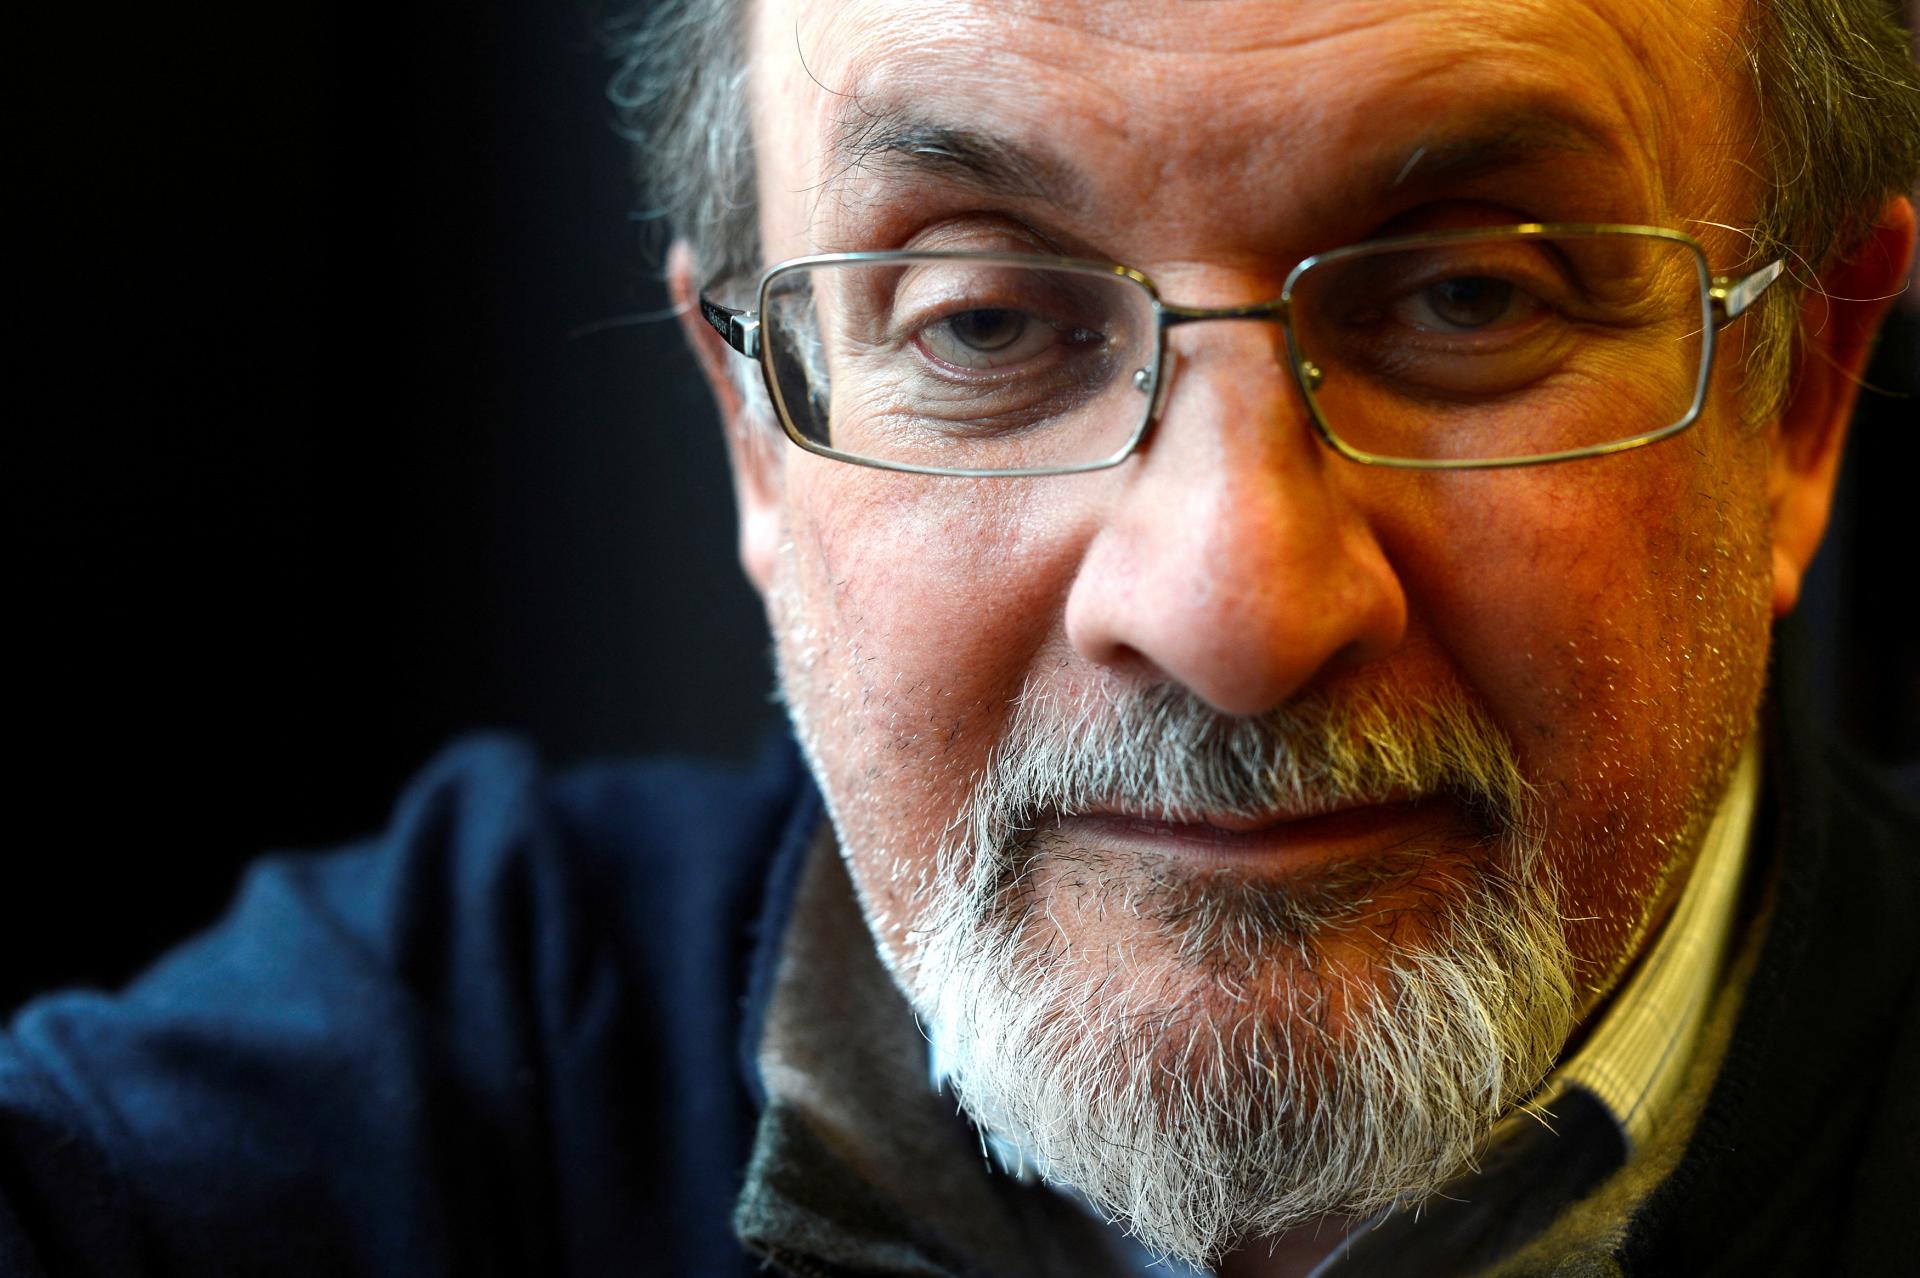 Muža, ktorý zaútočil na spisovateľa Rushdieho, obvinili z pokusu o vraždu. Ten bojuje o život v nemocnici